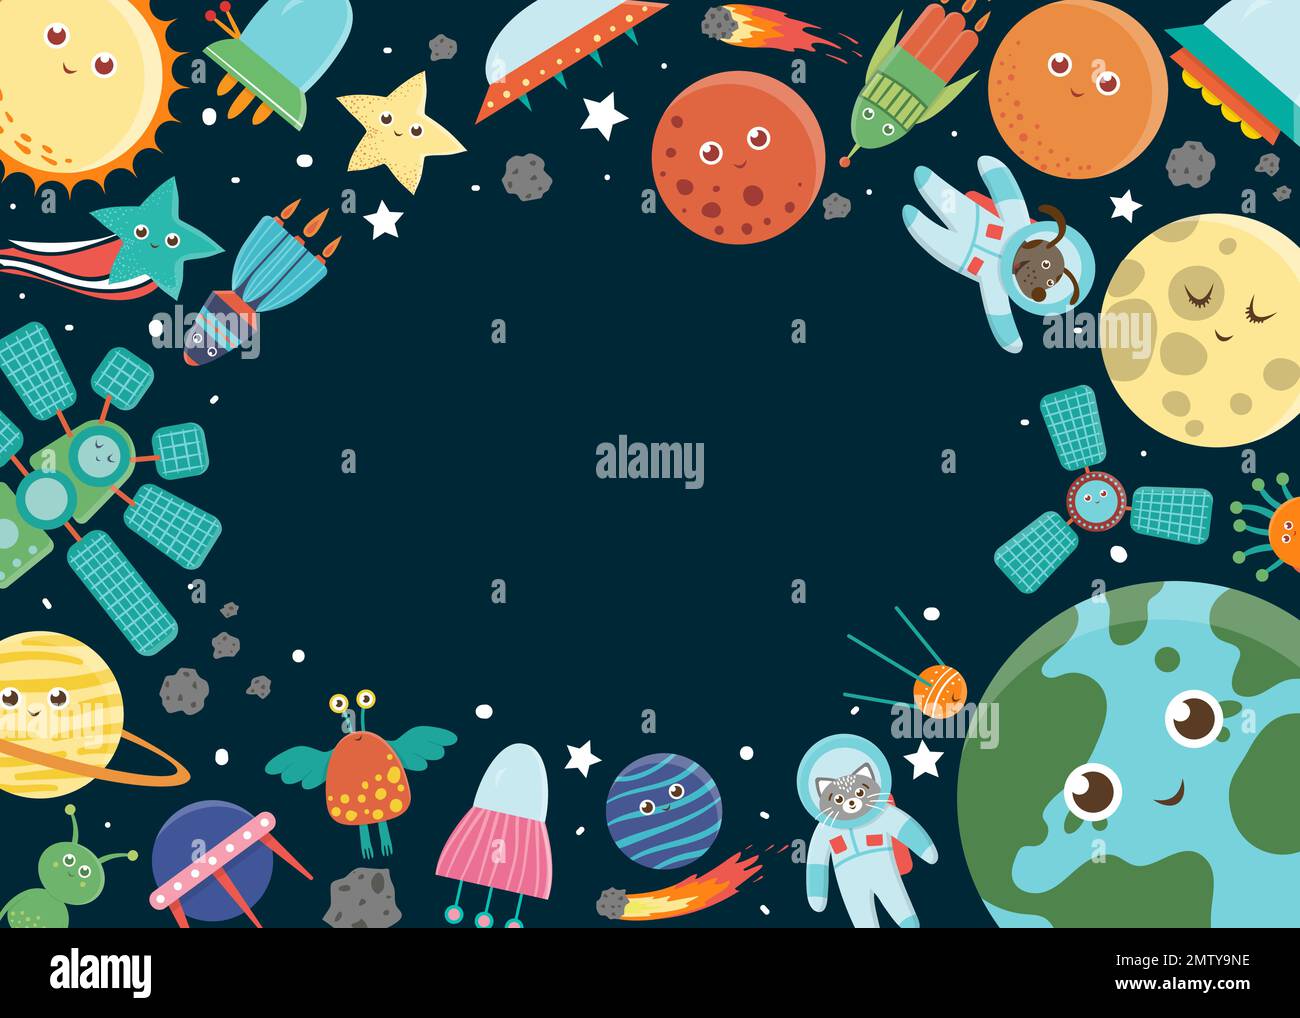 Rahmenvorlage für Vektorraum. Horizontales Banner mit Galaxie, Sternen, Planeten, Rakete für Kinder. Süße flache Illustration Stock Vektor